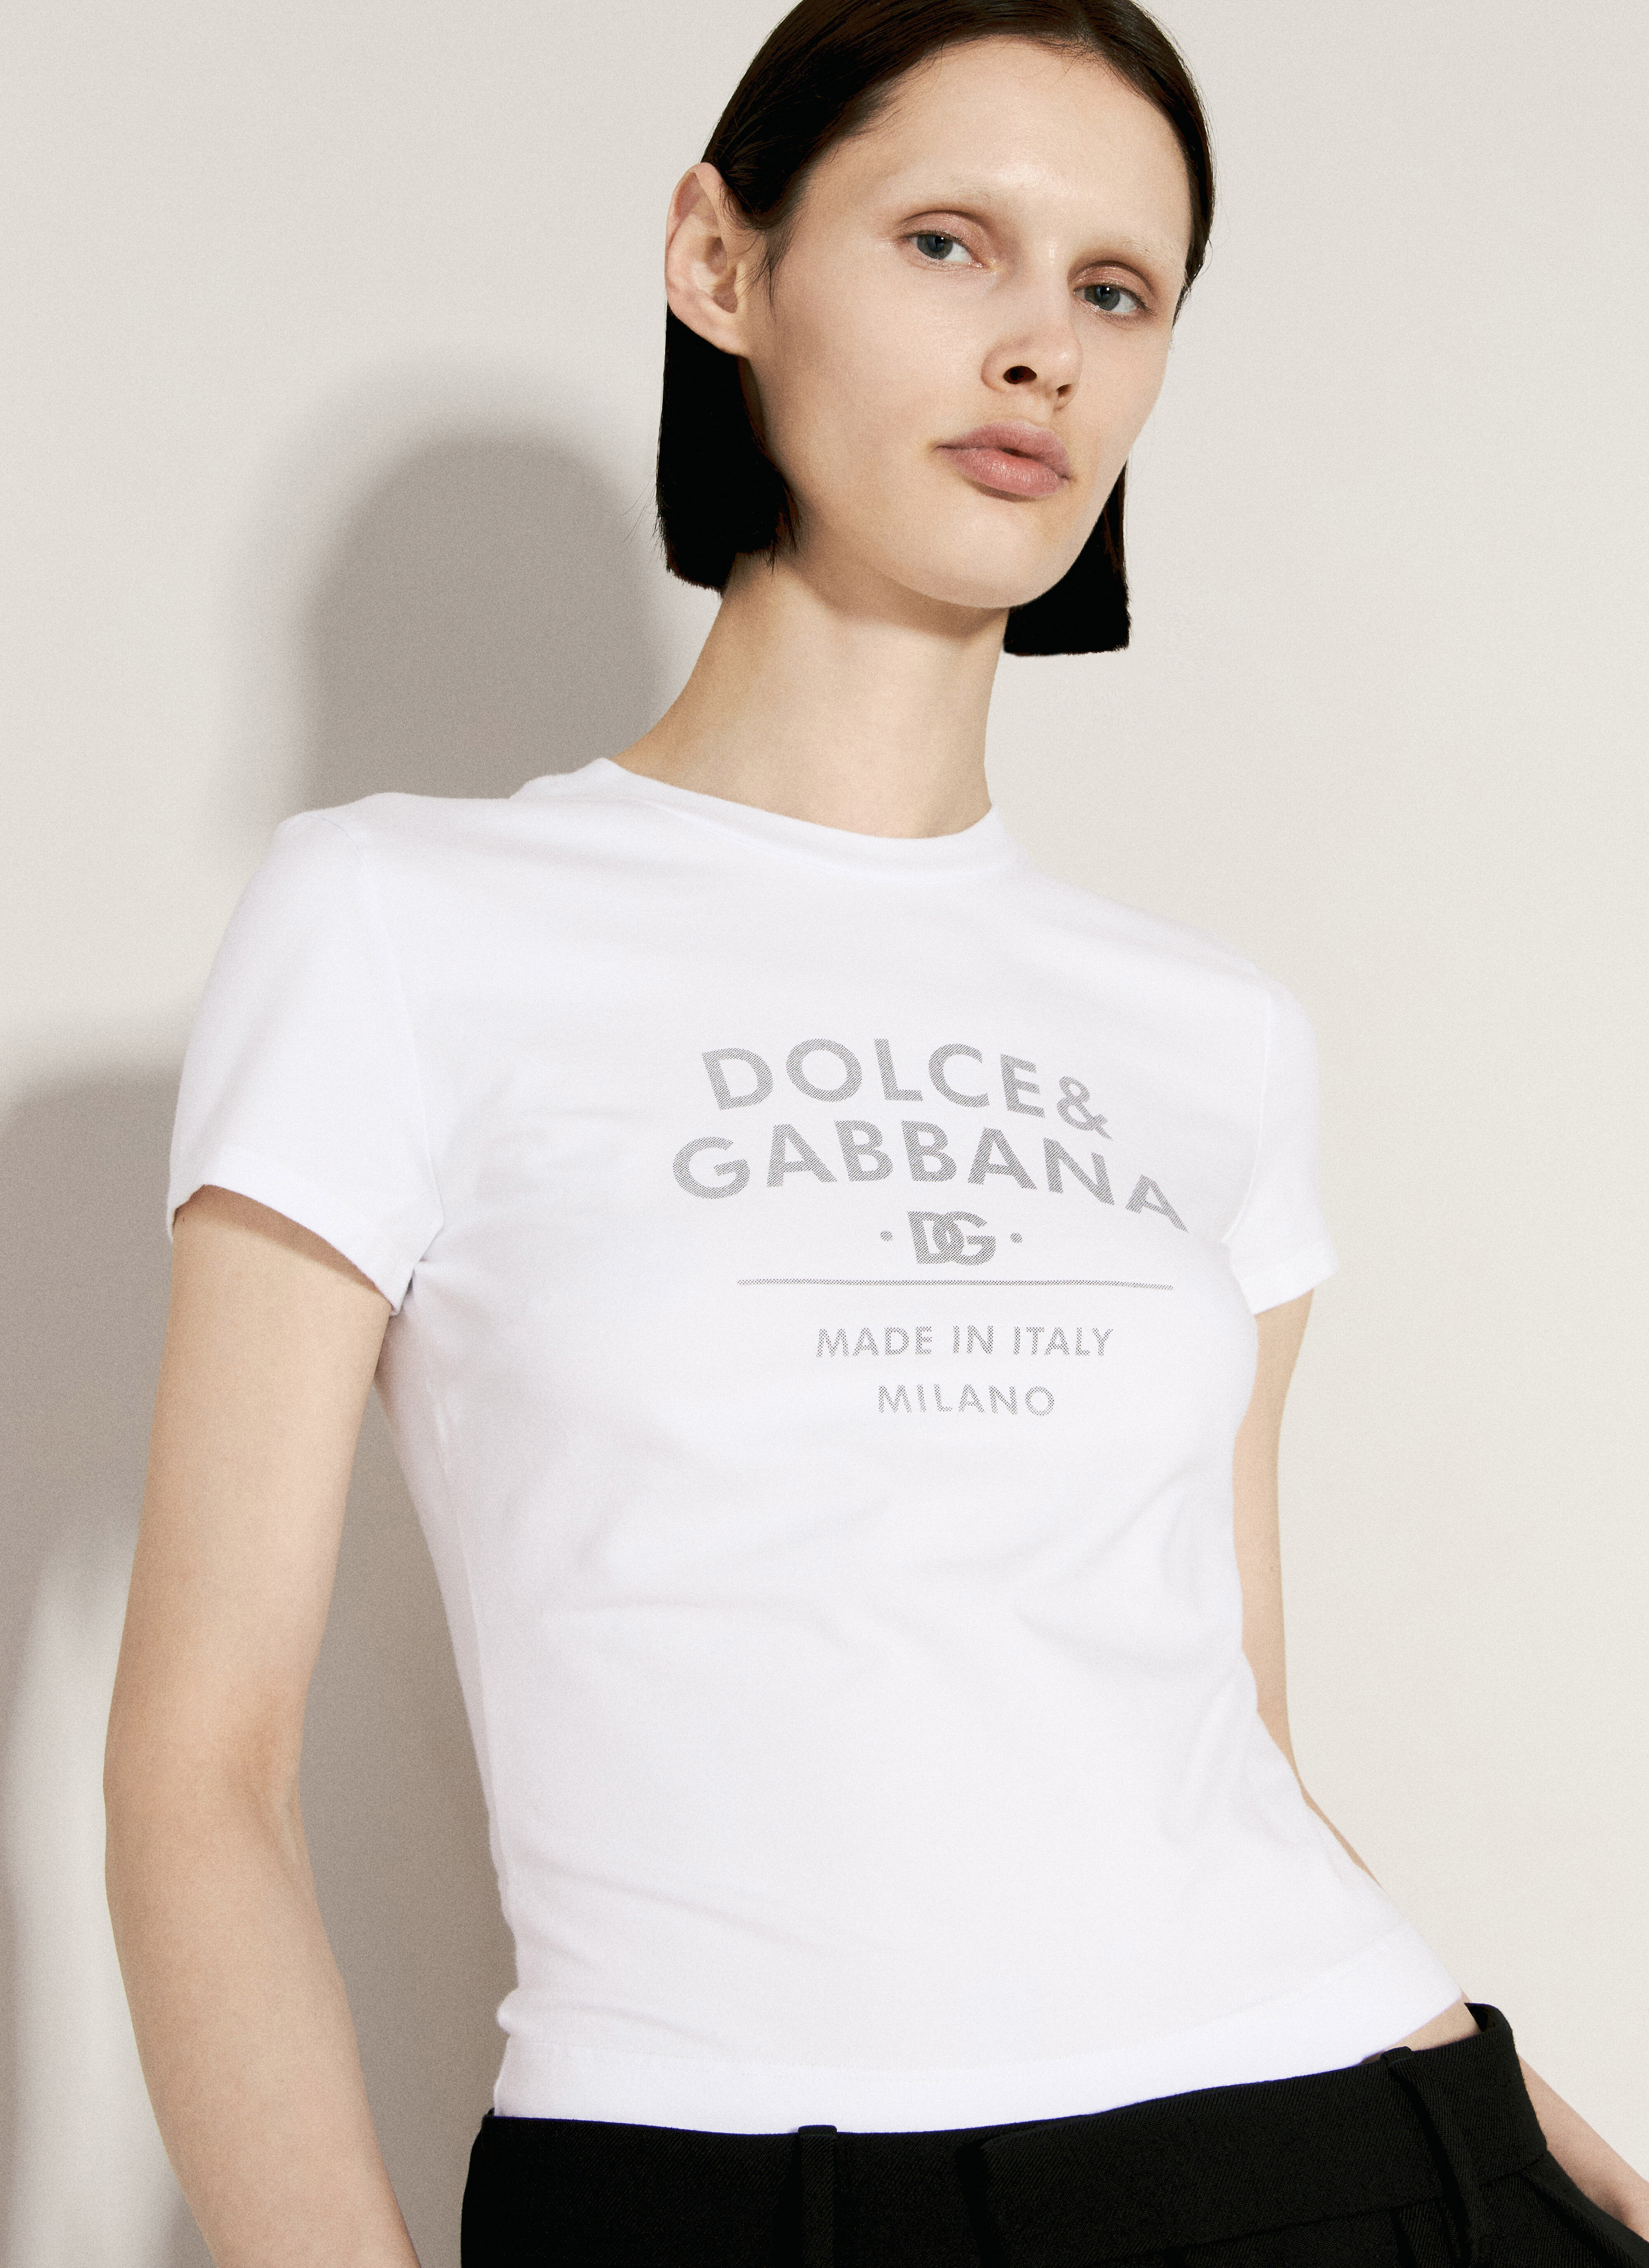 Dolce & Gabbana 로고 프린트 티셔츠  옐로우 dol0255015